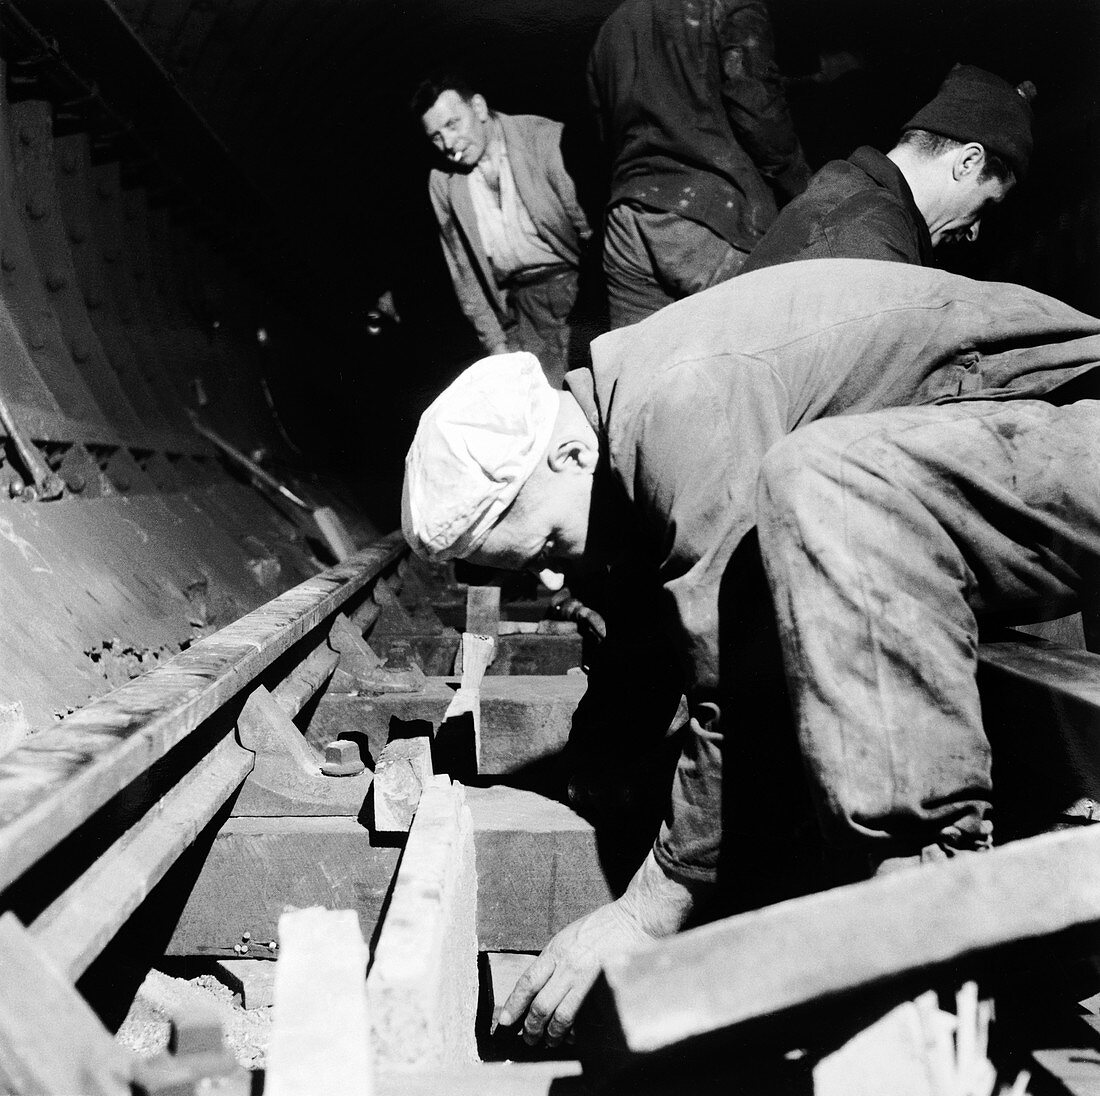 Repairing underground train tracks, London, 1955